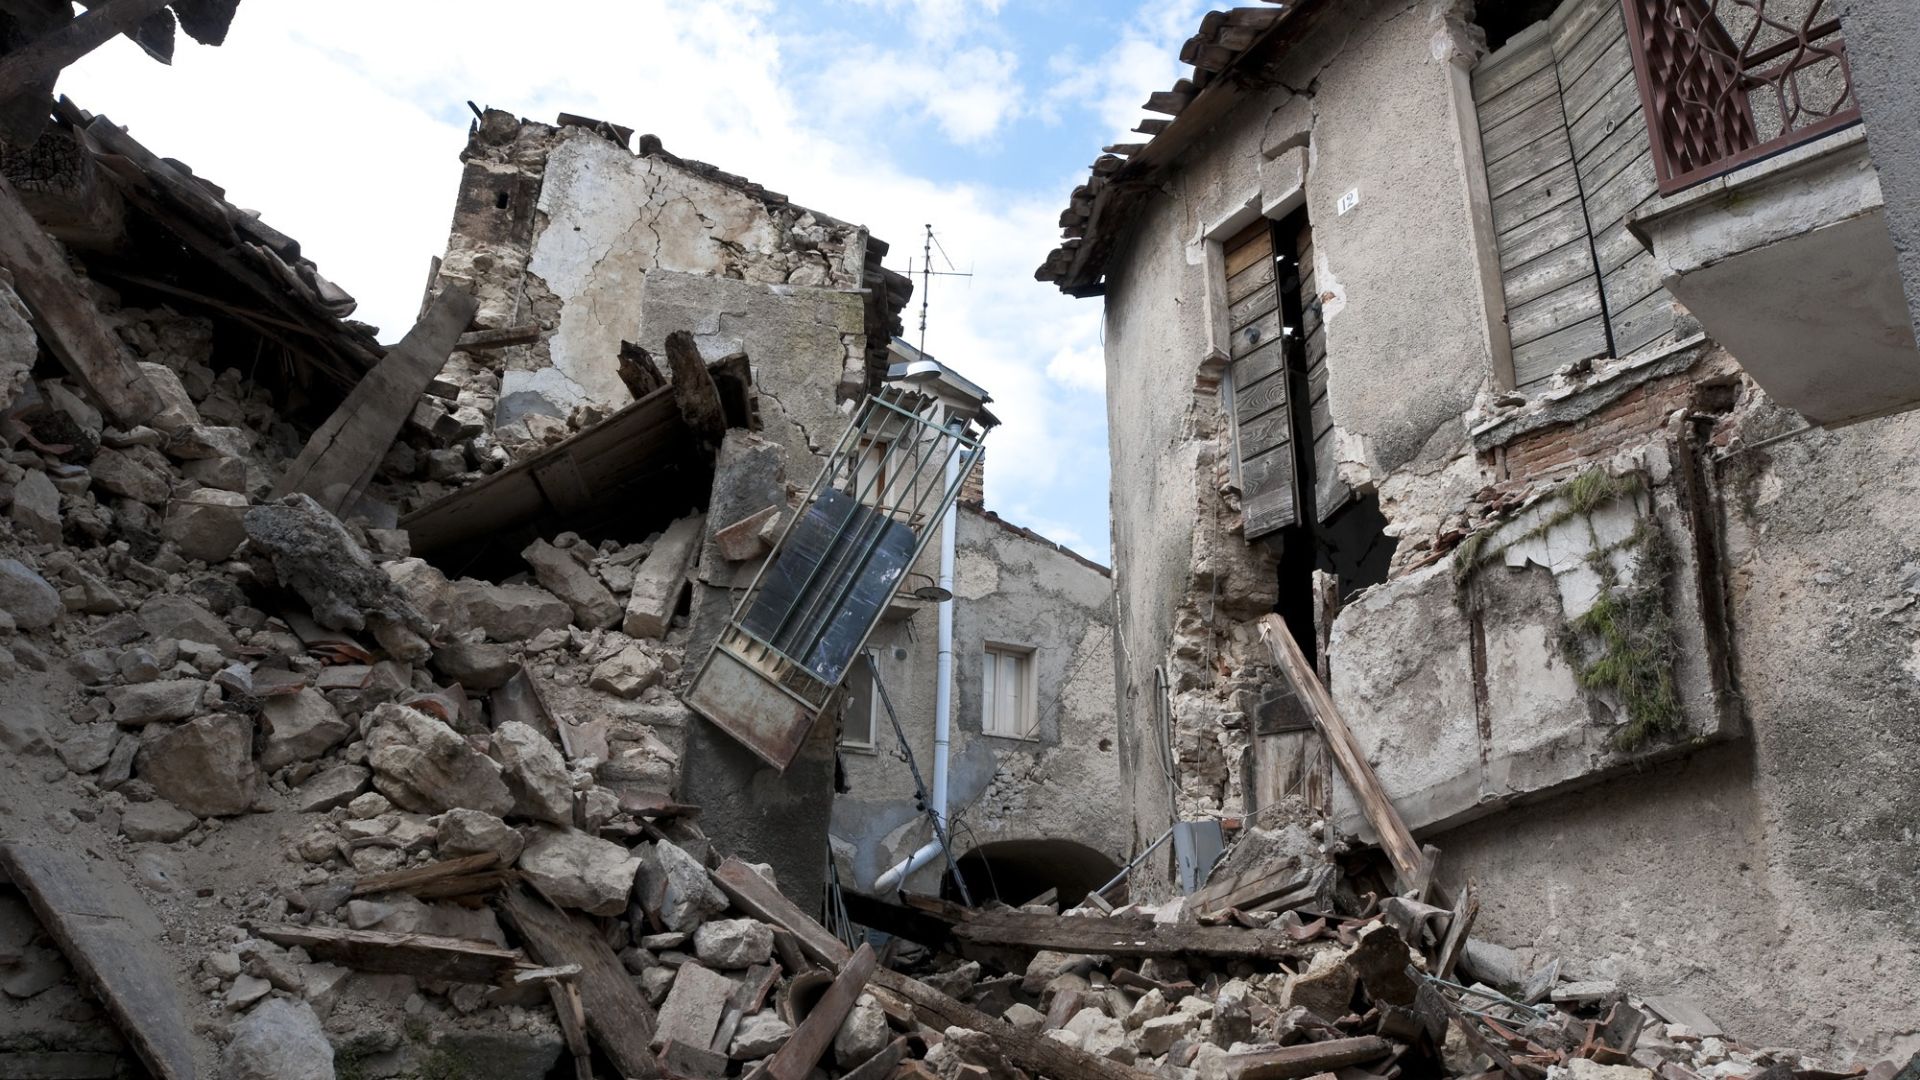 AVVISO AI CLIENTI FIDER - Misure previste dall'OCDPC n.991 e n.1042 per fronteggiare l'emergenza provocata dagli eventi sismici - Sospensione rate mutui